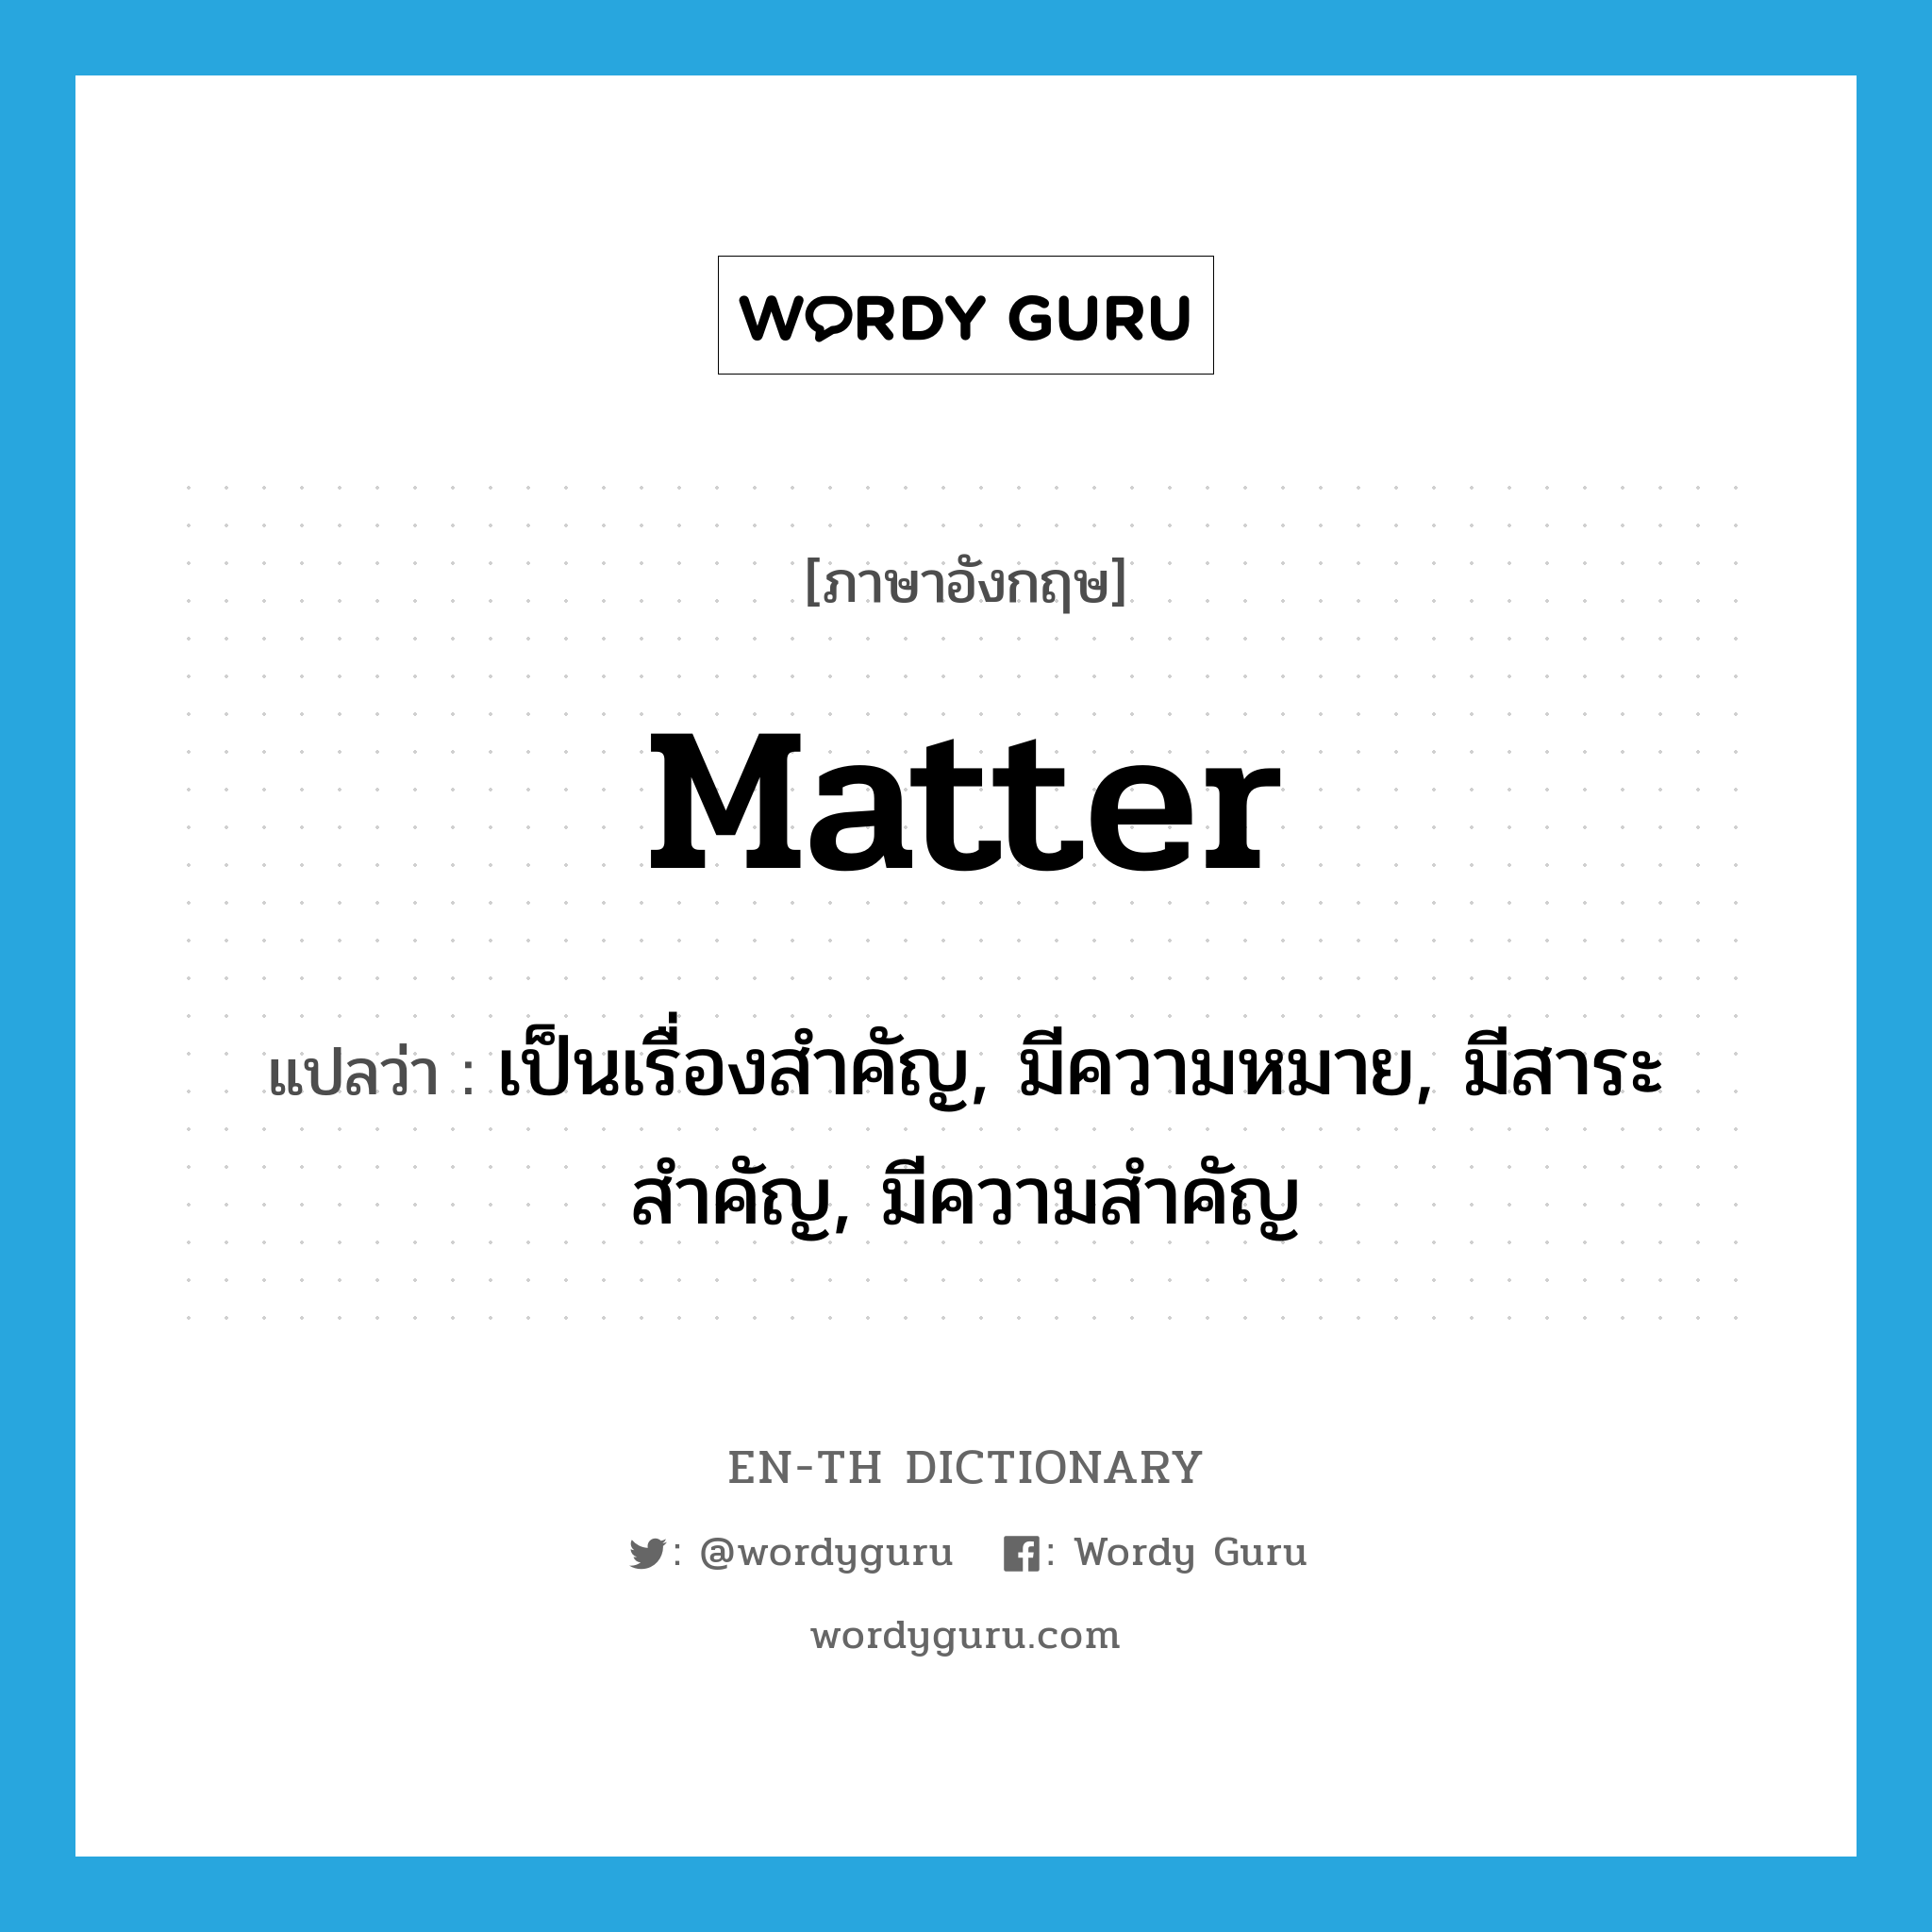 matter แปลว่า?, คำศัพท์ภาษาอังกฤษ matter แปลว่า เป็นเรื่องสำคัญ, มีความหมาย, มีสาระสำคัญ, มีความสำคัญ ประเภท VI หมวด VI